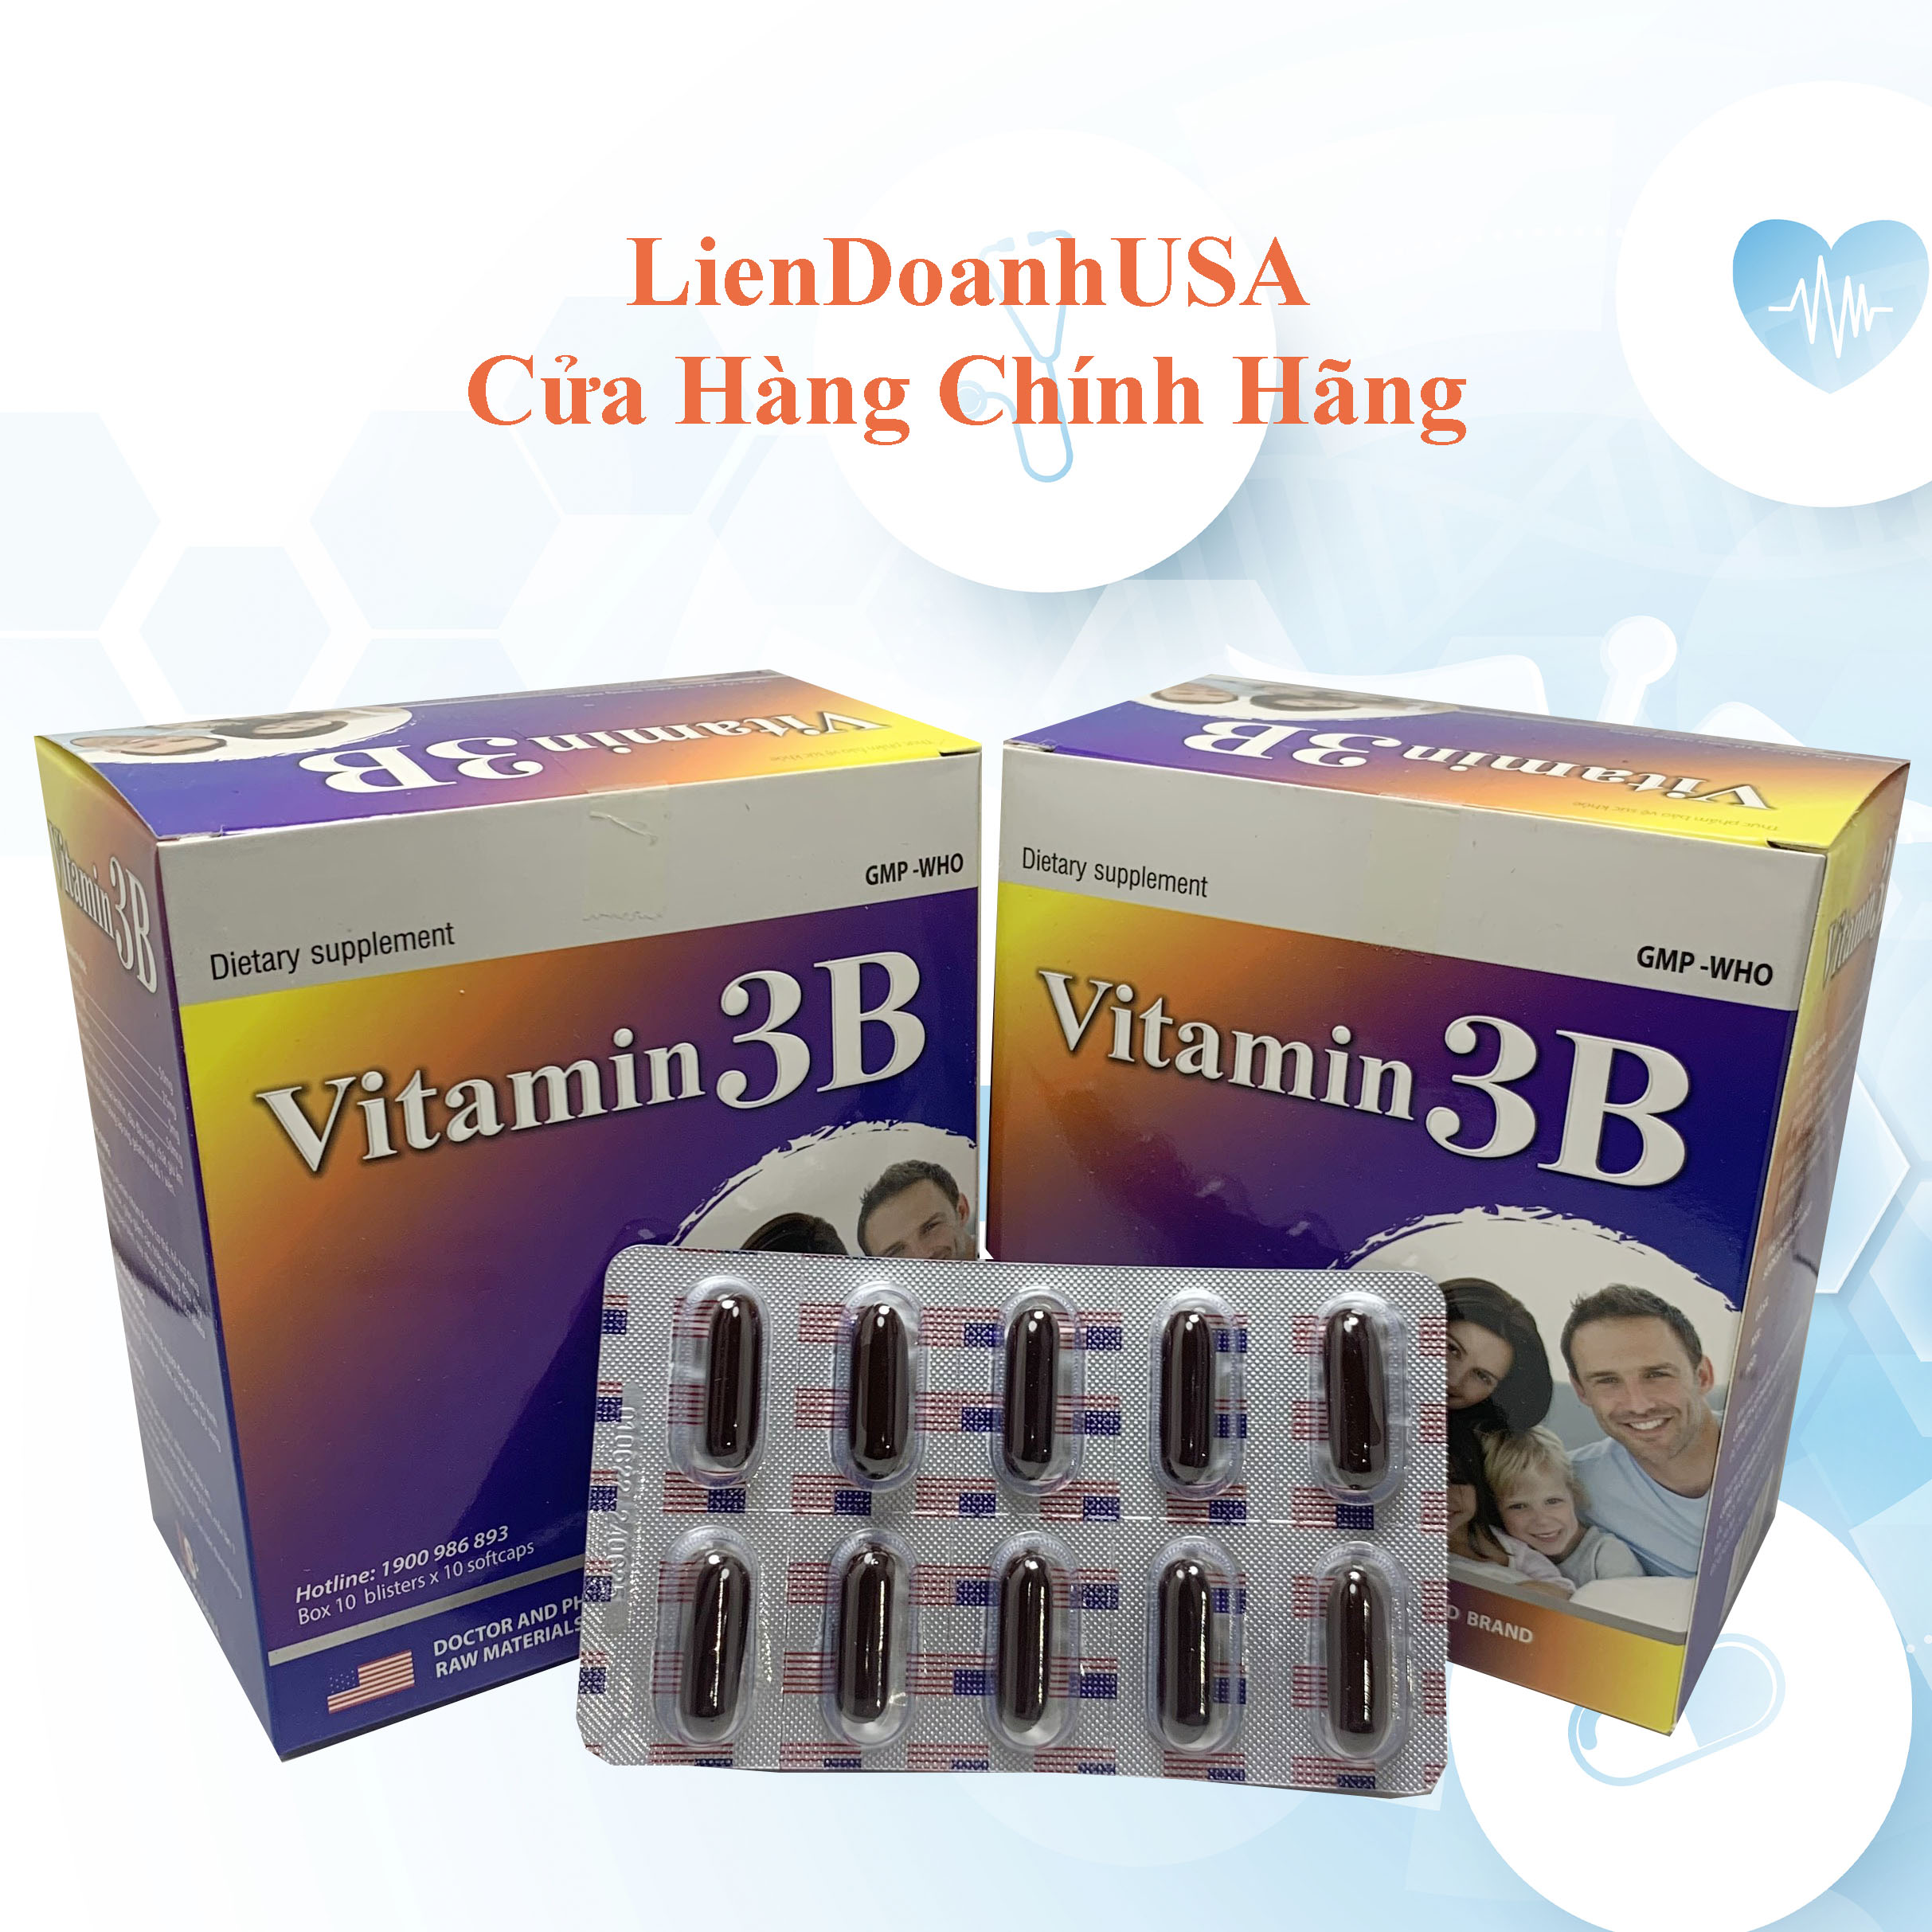 VITAMIN 3B bổ sung vitamin nhóm B, hỗ trợ tăng sức đề kháng, sức khỏe